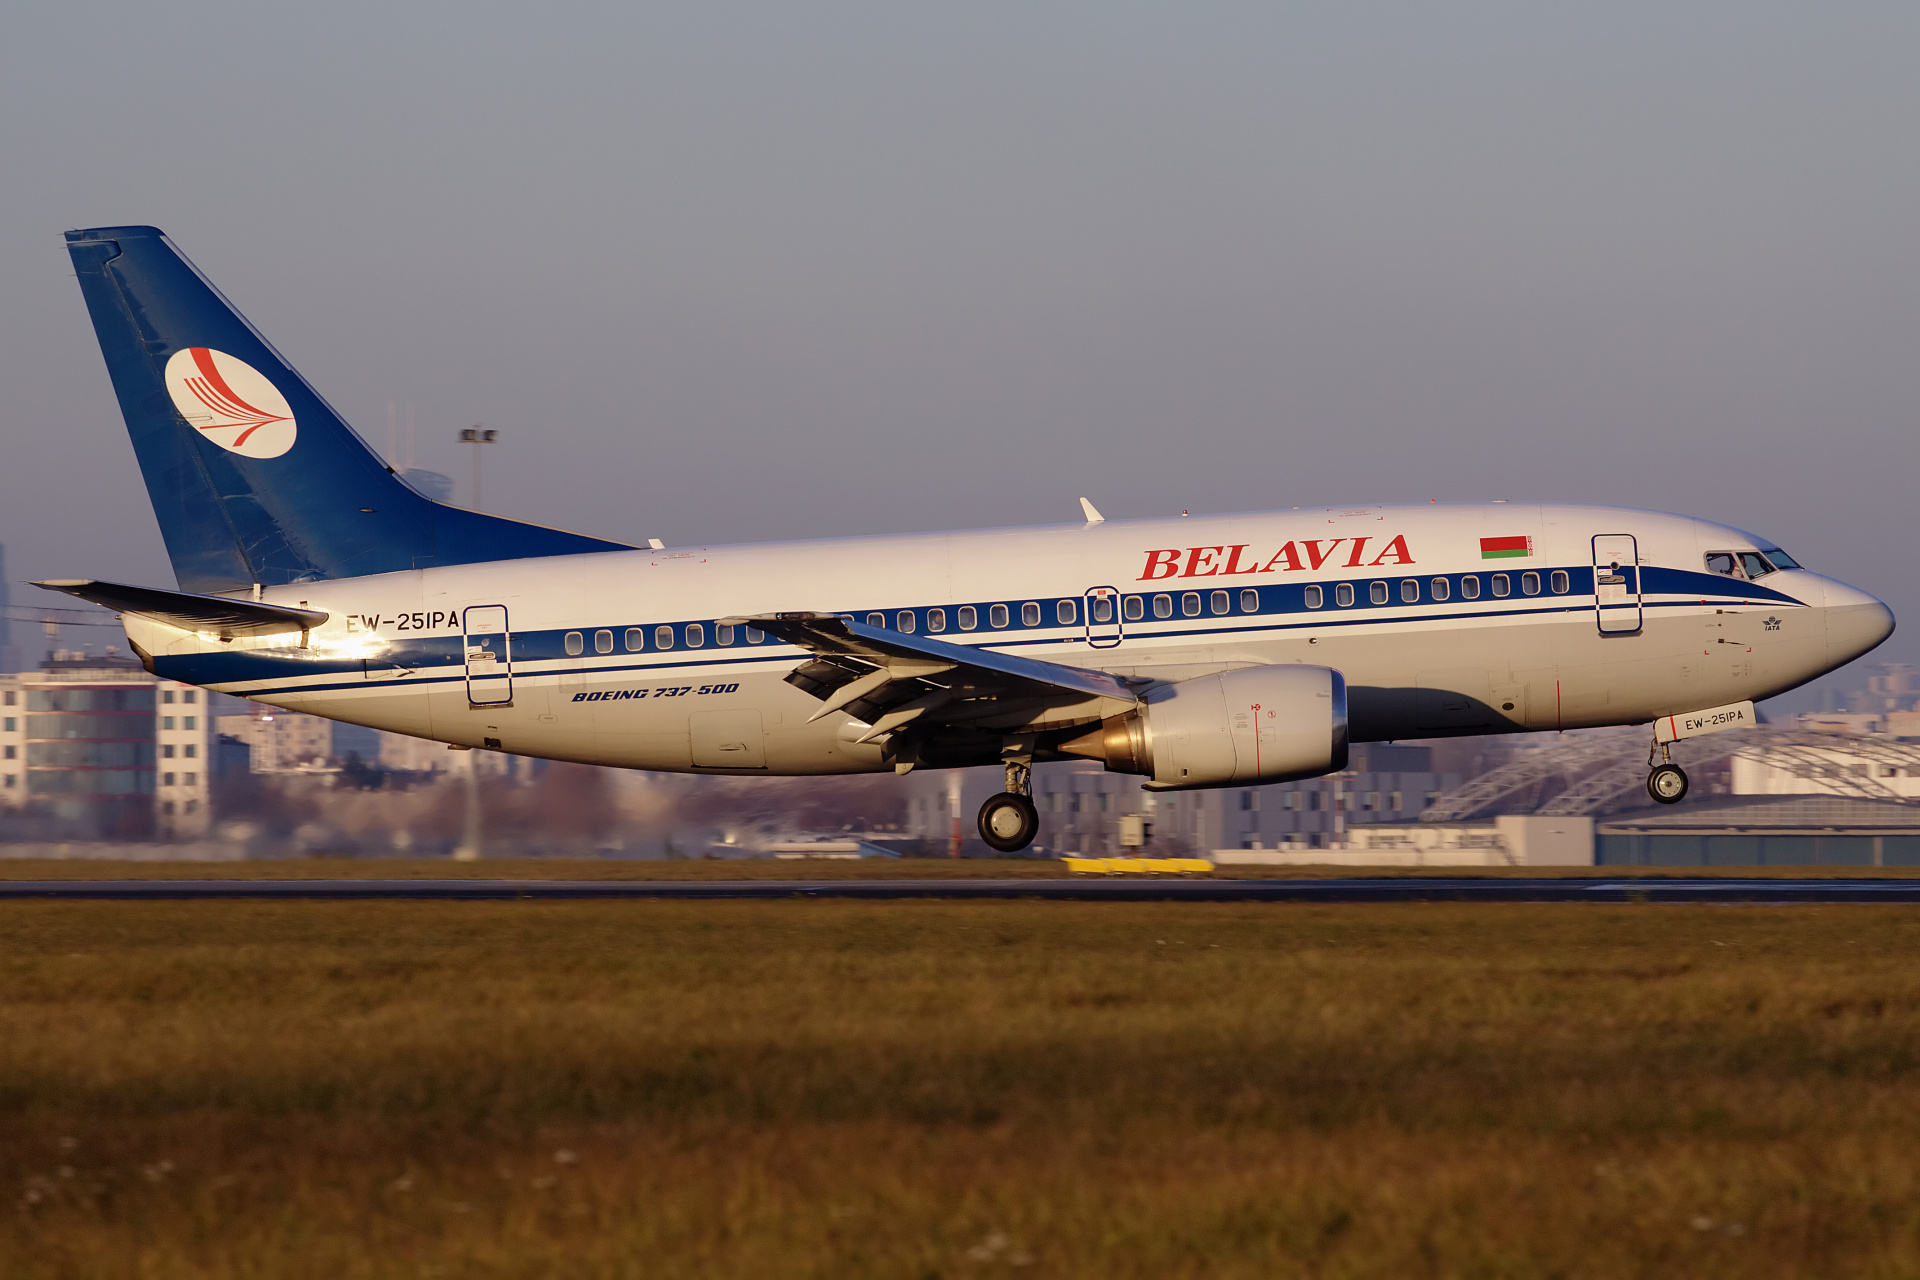 EW-251PA (Aircraft » EPWA Spotting » Boeing 737-500 » Belavia)